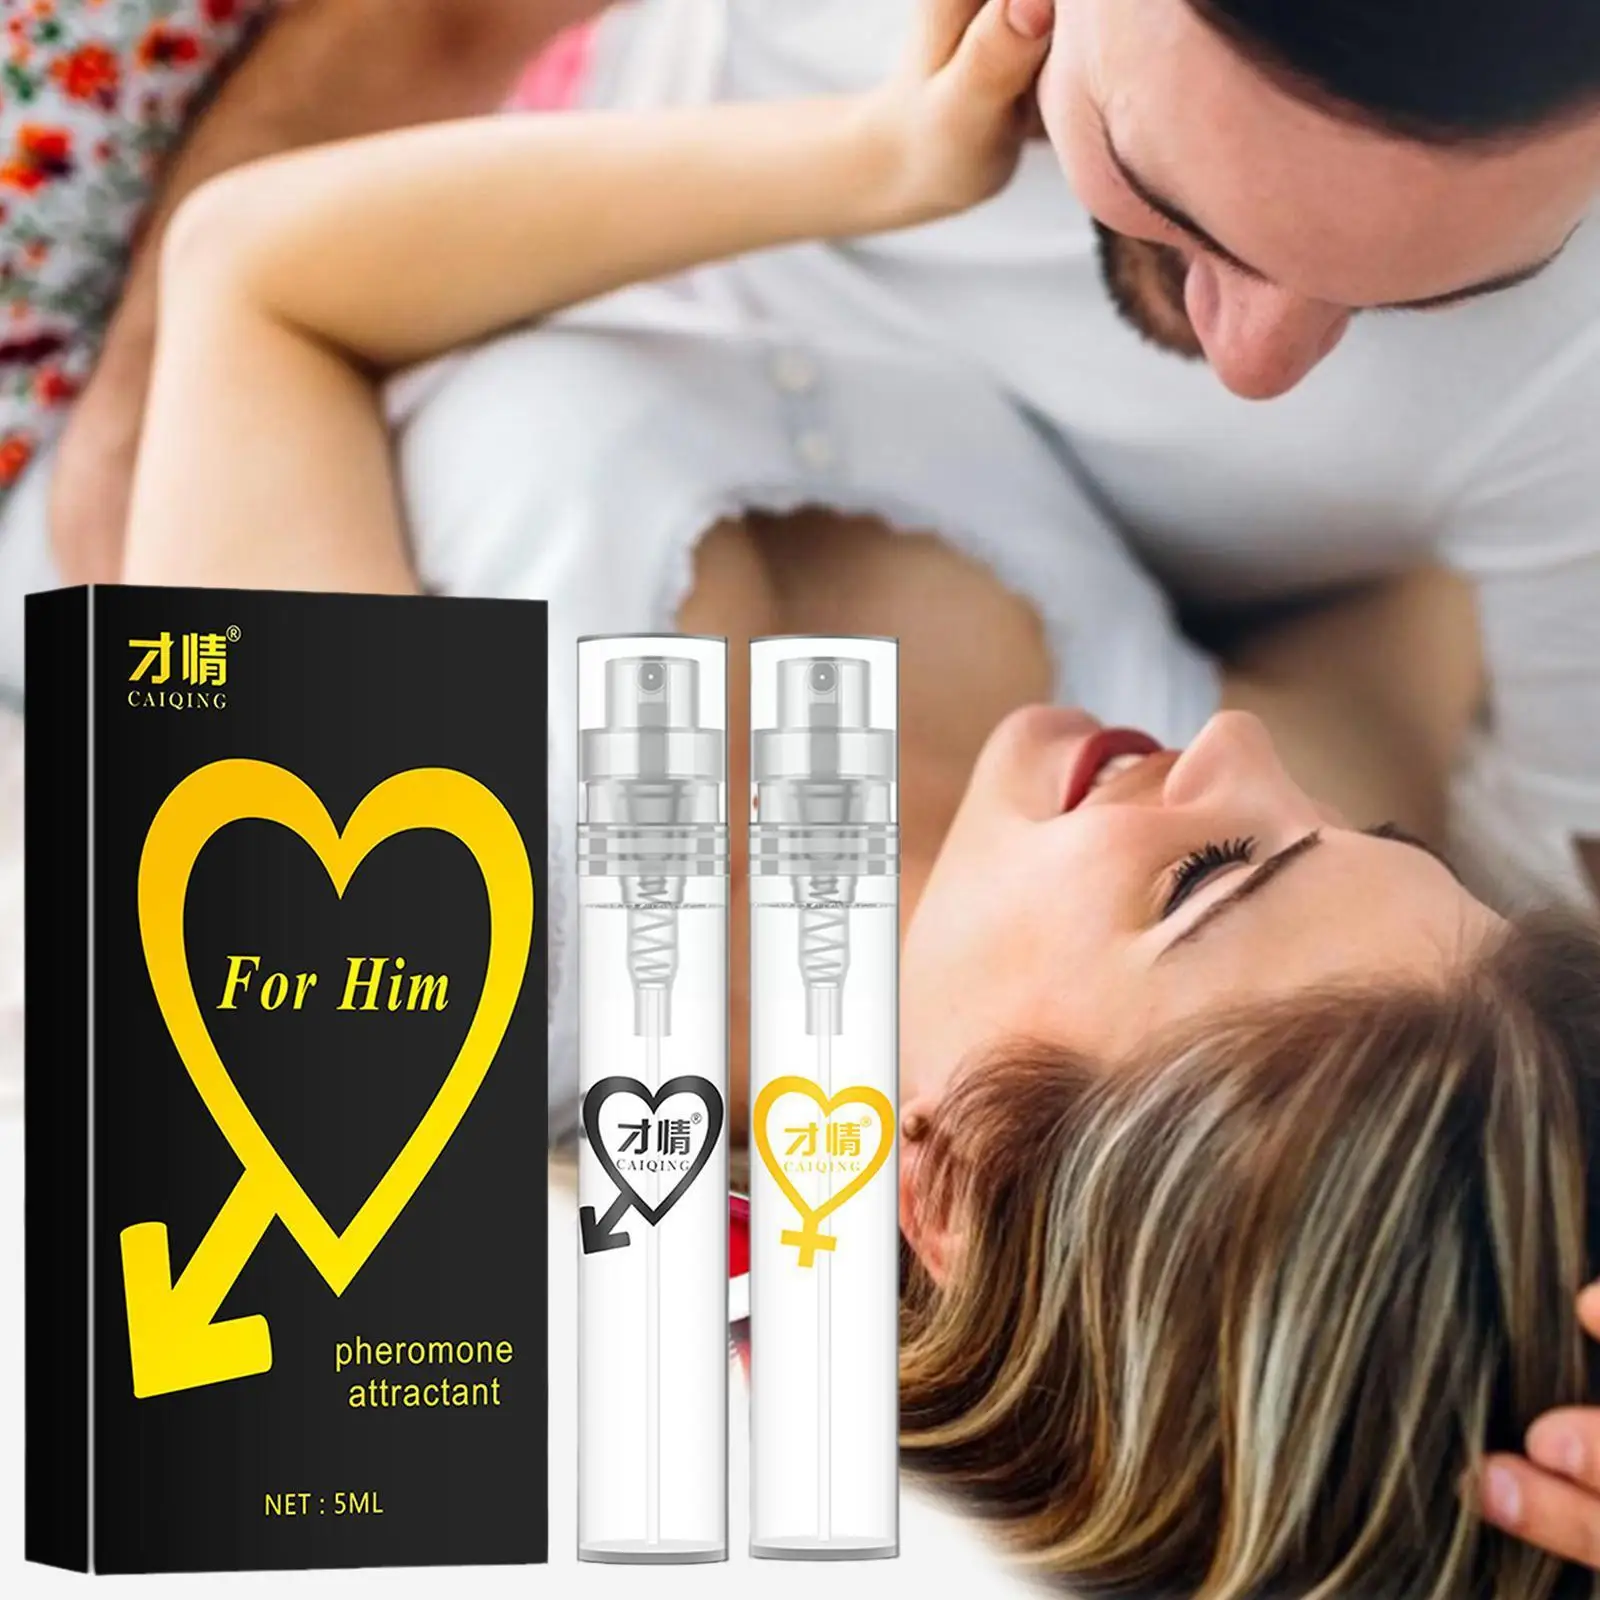 בושם פרומון עבור נשים גברים Parfum זוג מפלרטט Attractant סקסי בשמים לאורך זמן ניחוח הגוף ריח ספריי Dropship - 2